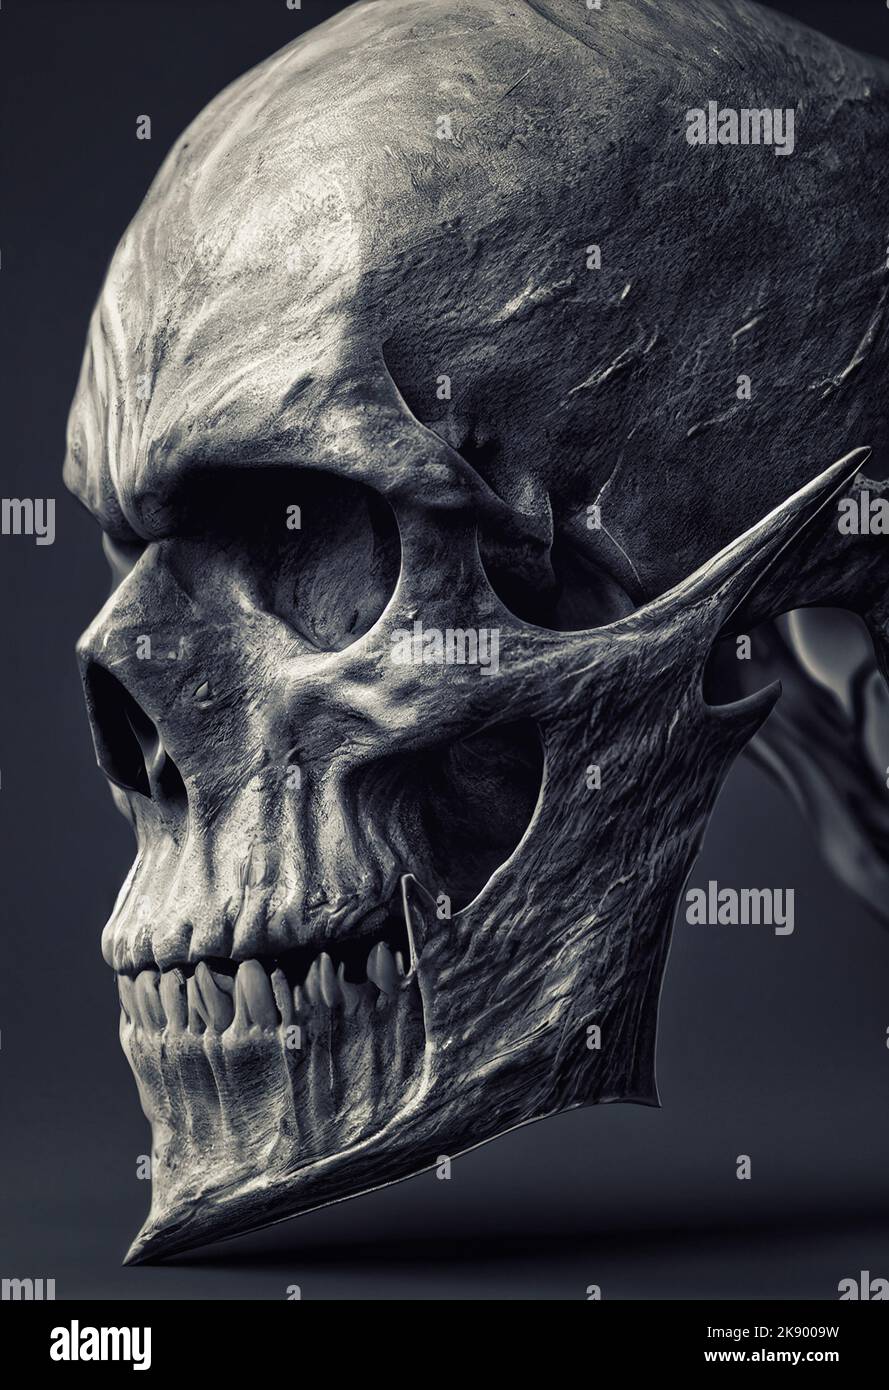 Une illustration en 3D d'un crâne humain de fantaisie comme un concept de science-fiction Banque D'Images